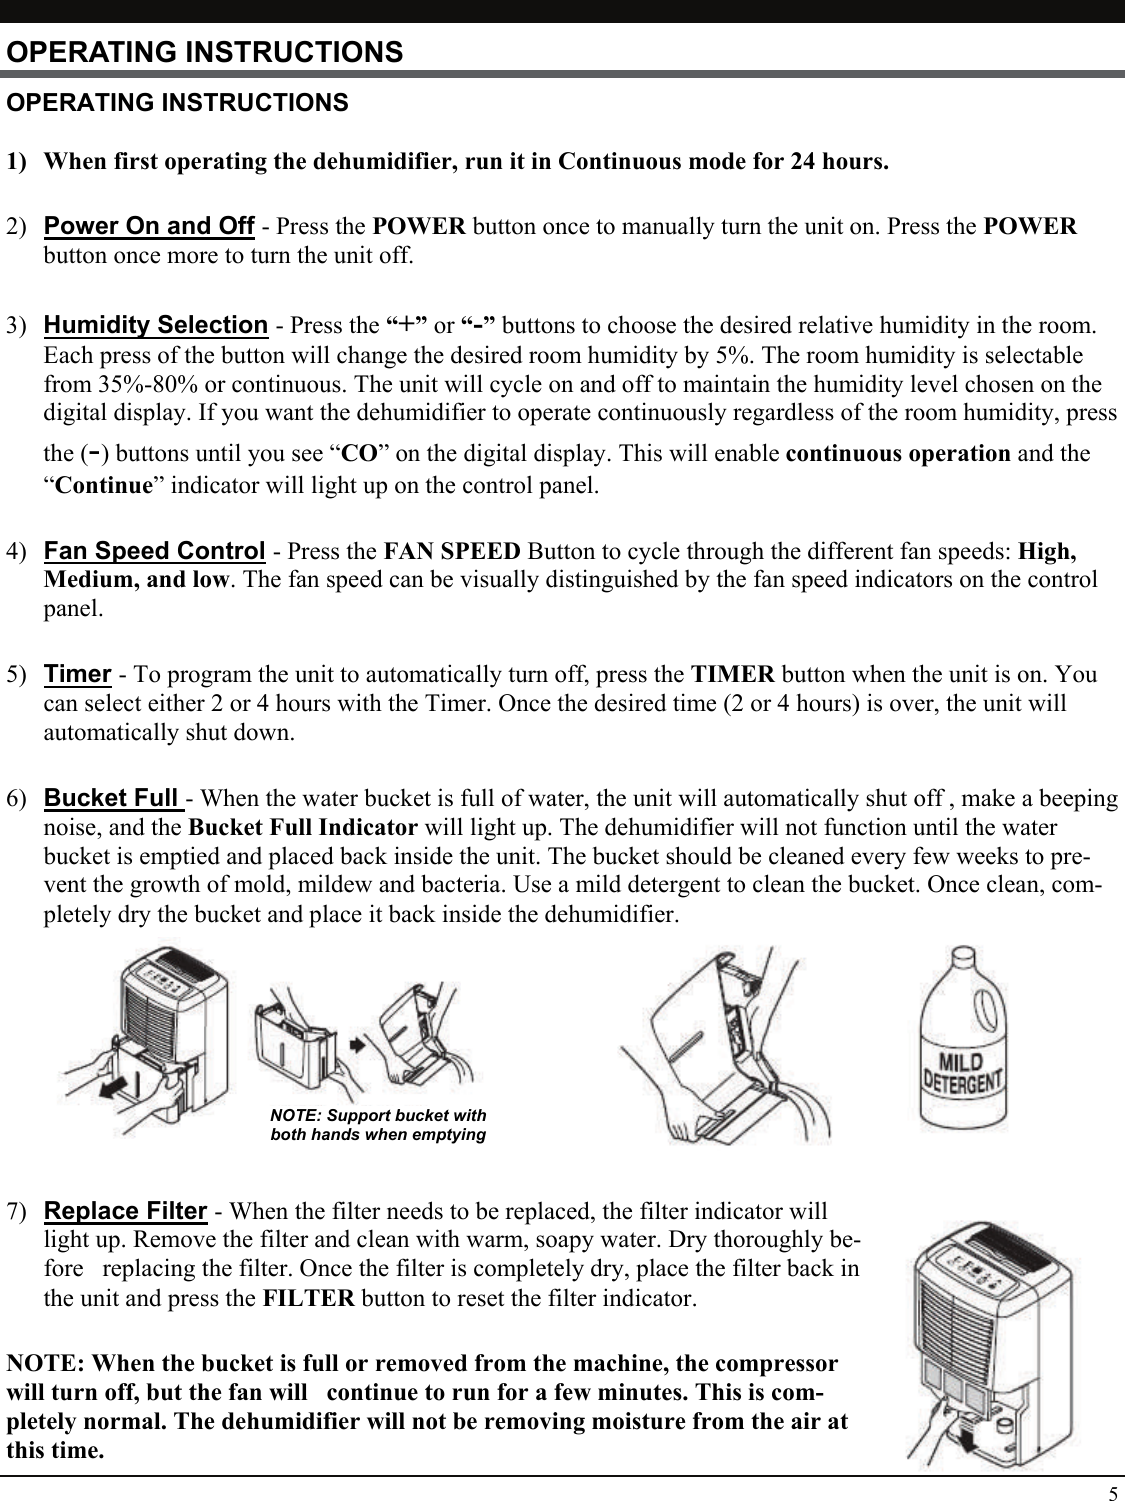 Page 5 of 8 - Soleus-Air Soleus-Air-Soleus-Air-Dehumidifier-Gm-Deh-30M-1-Gm-Deh-45-1-Users-Manual-  Soleus-air-soleus-air-dehumidifier-gm-deh-30m-1-gm-deh-45-1-users-manual